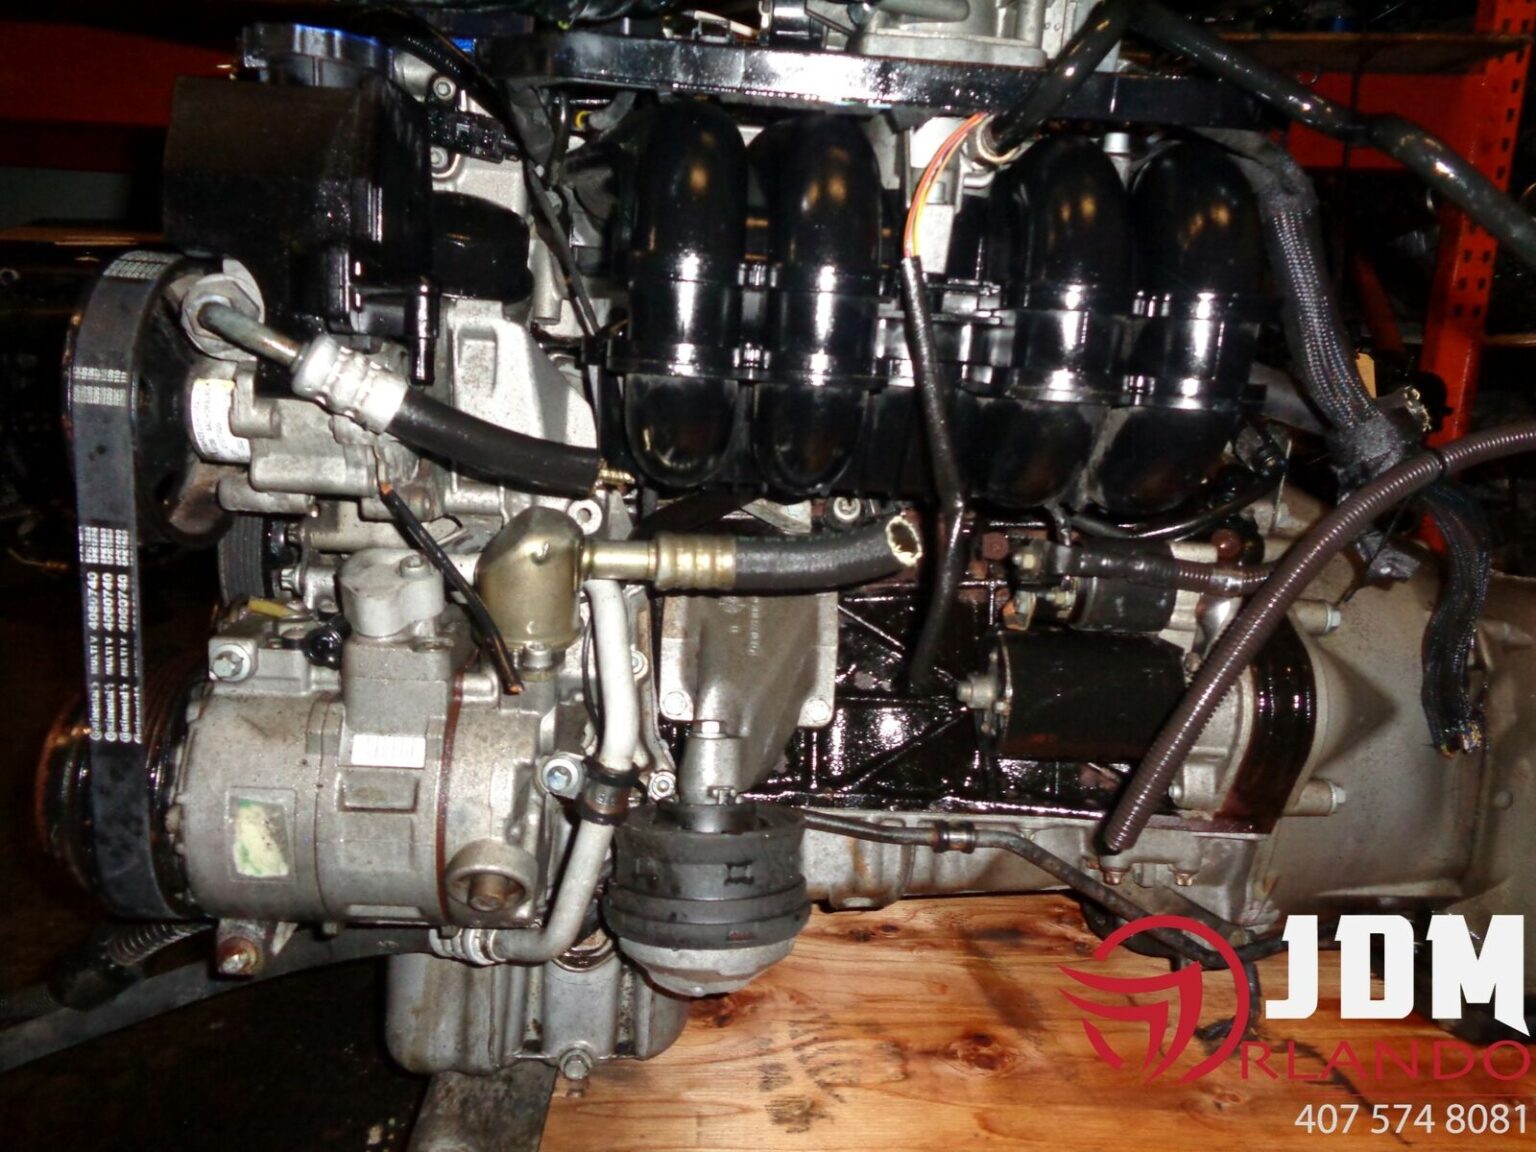 c230 kompressor engine